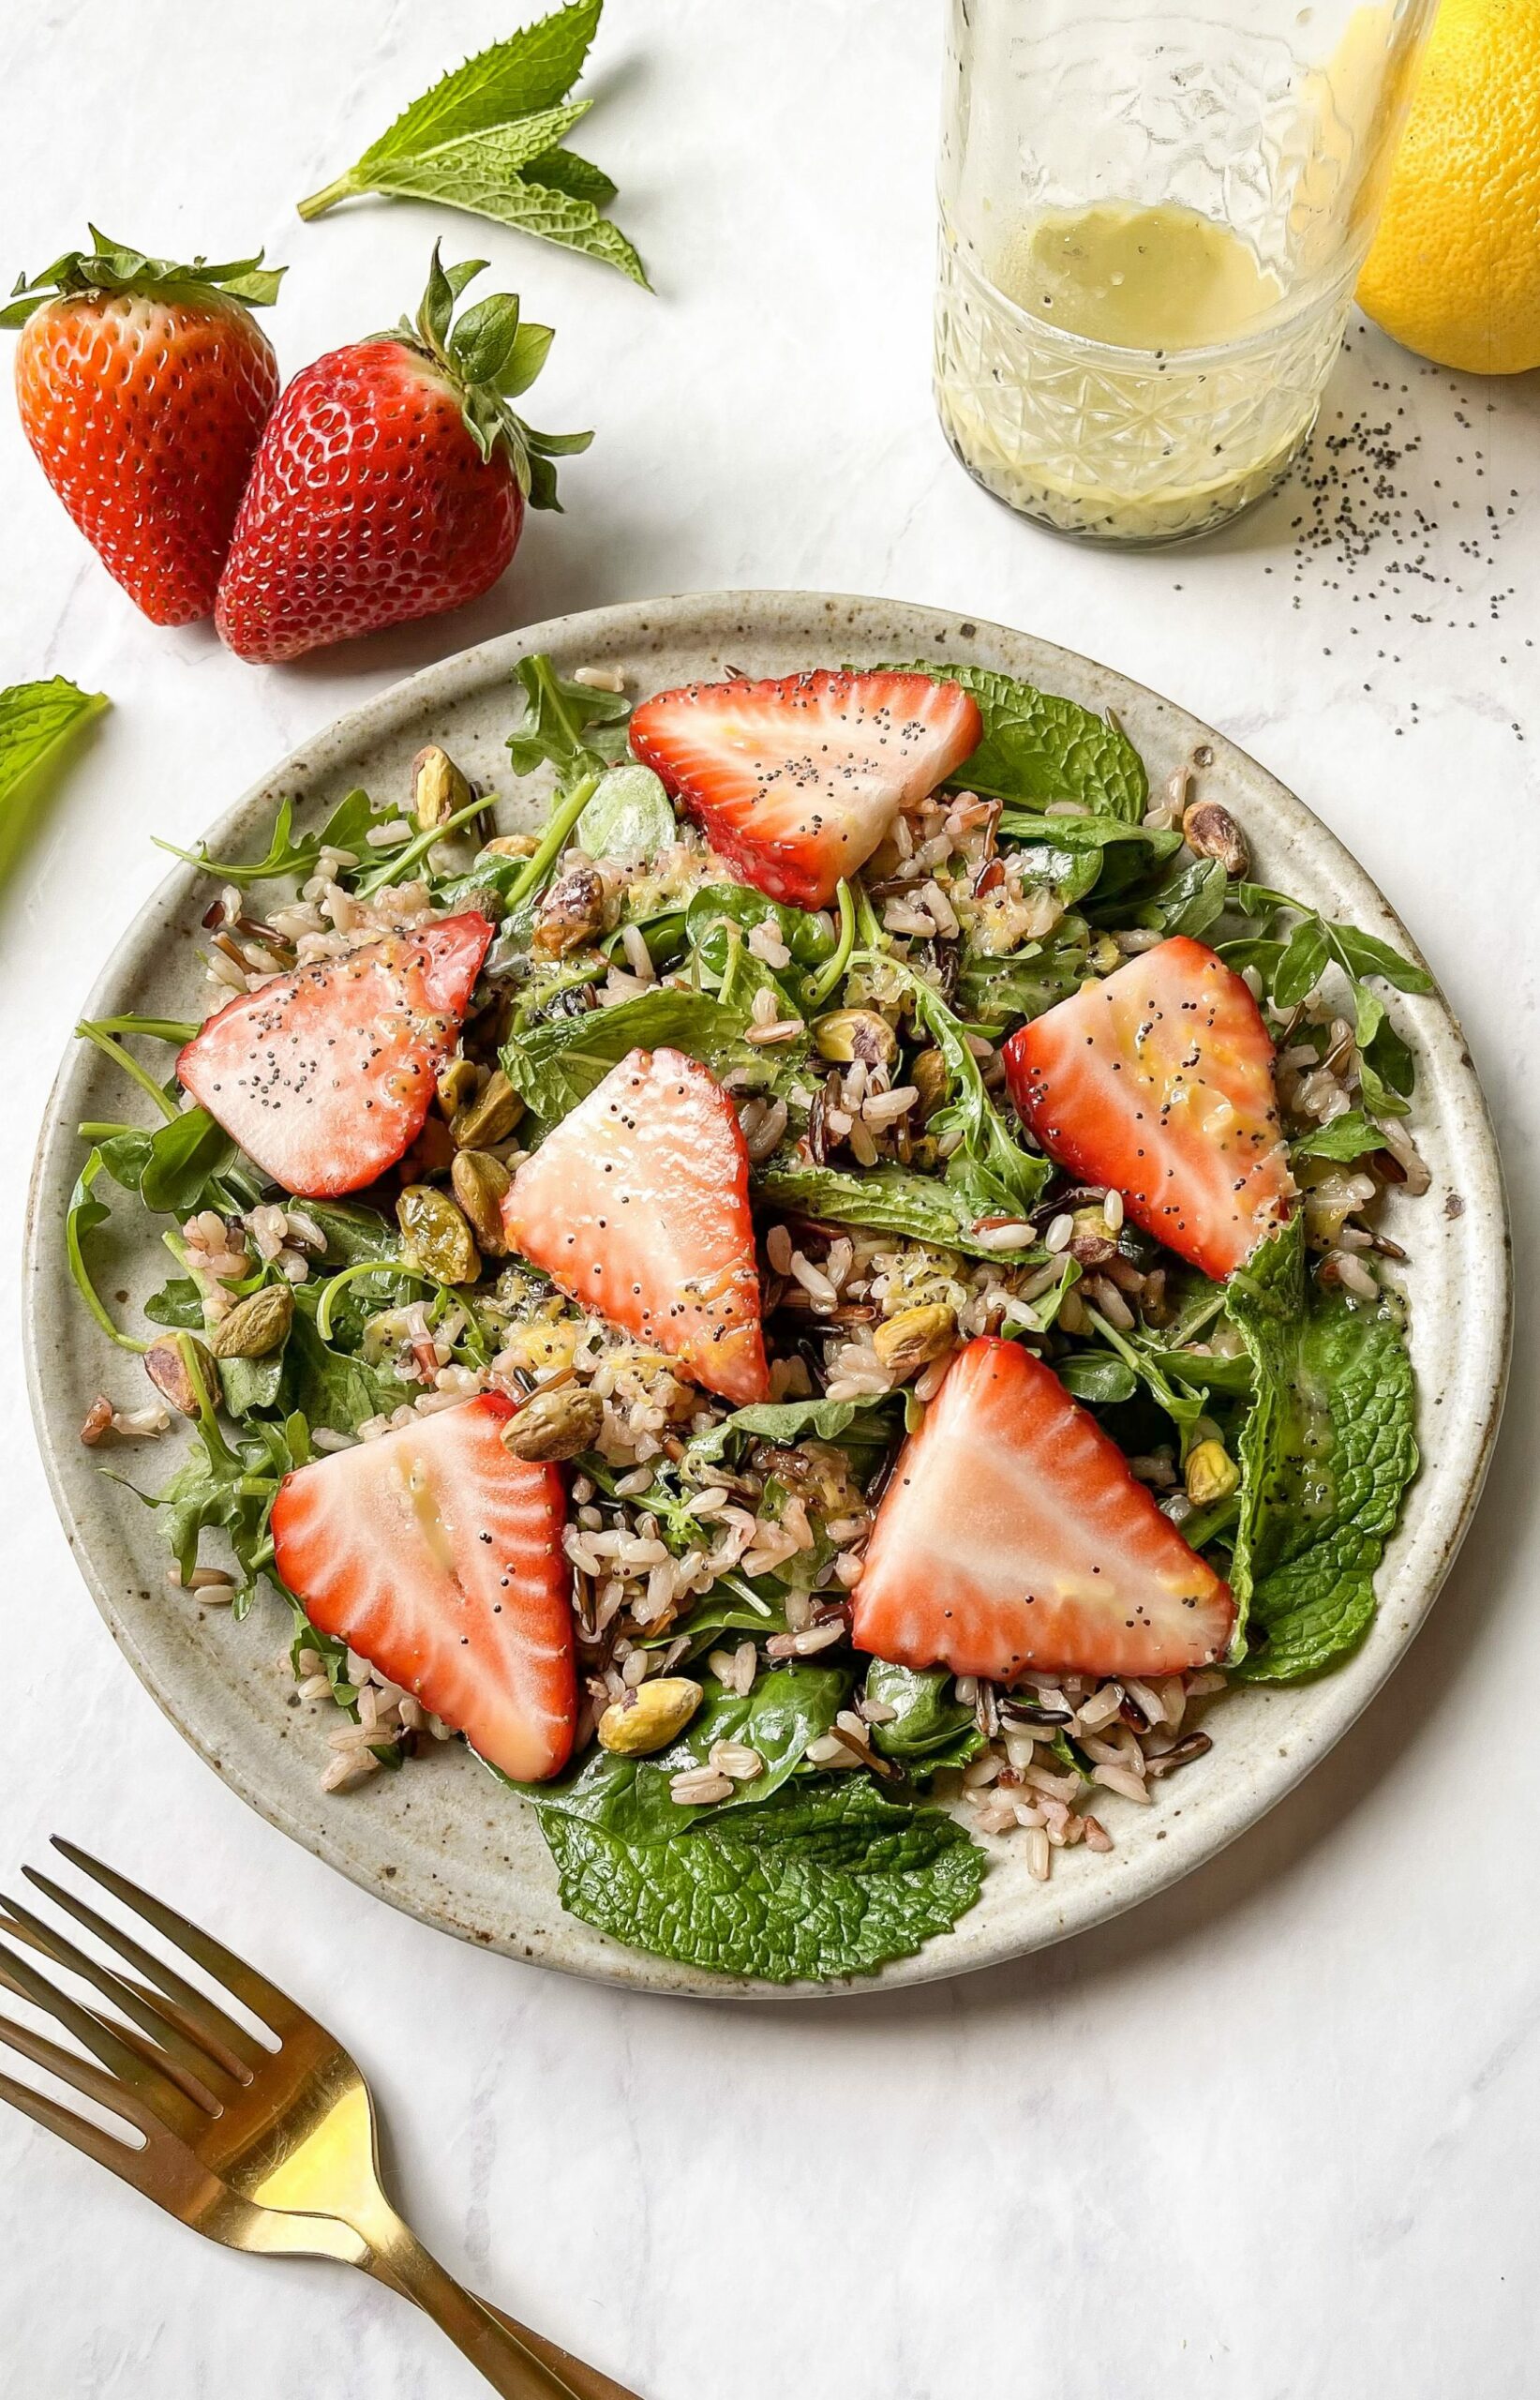 Summer Strawberry Salad with Lemon Poppyseed Vinaigrette